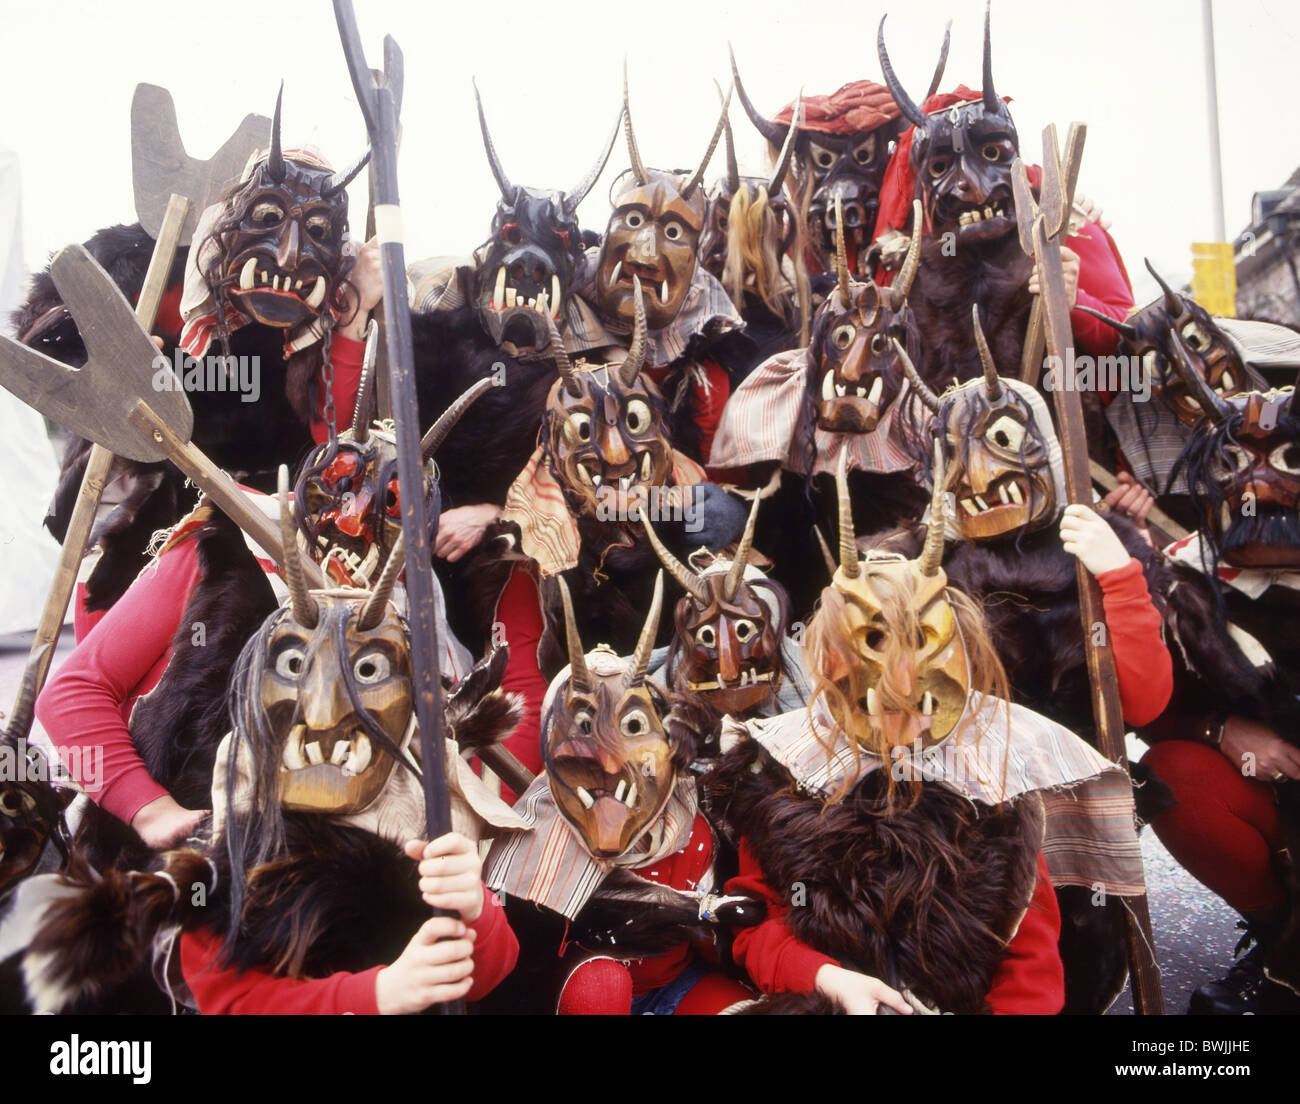 Flums Gruppe Karnevalskostüme Masken Holzmasken schnitzen Maske Kanton St.  Gallen Schweiz Europa Sarganser Stockfotografie - Alamy